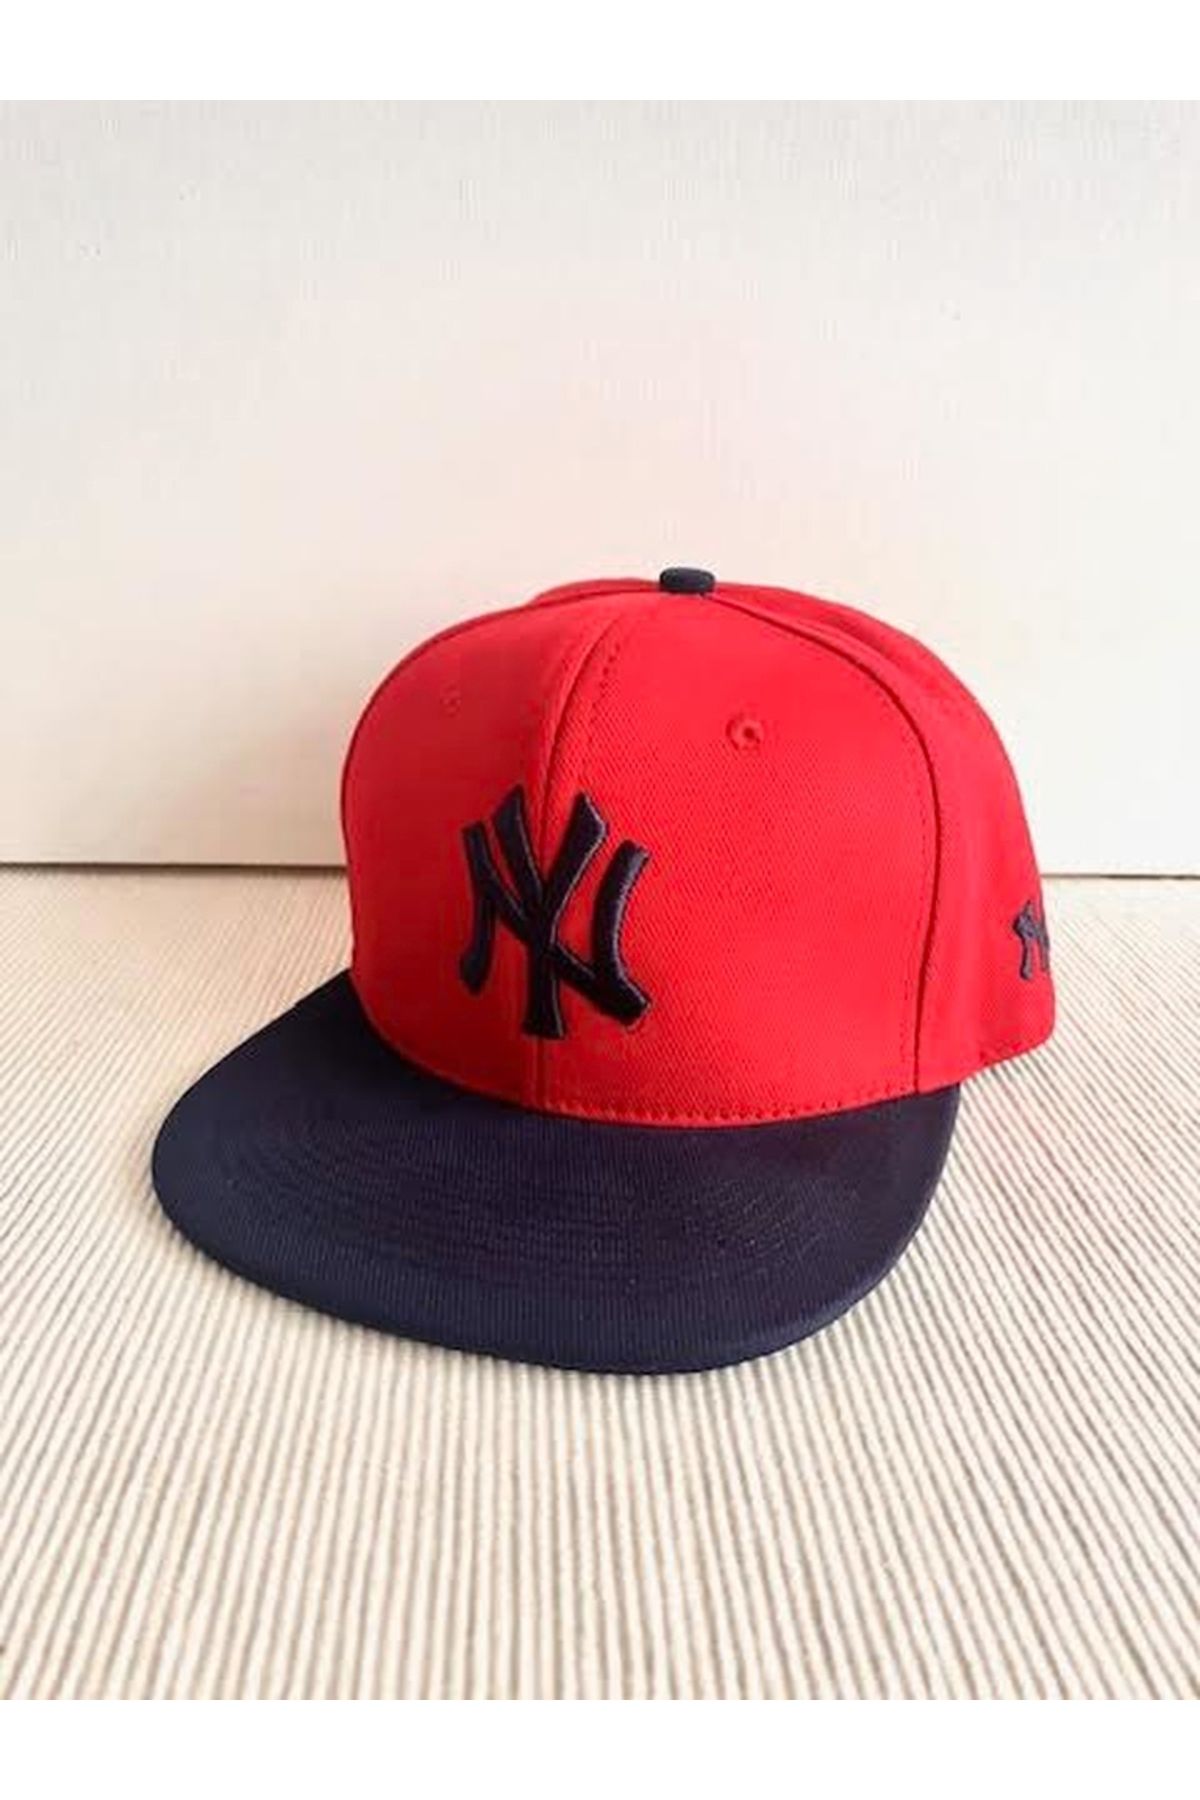 CosmoOutlet NY Nakışlı Arkasından Ayarlanabilir Unisex İki Renkli Lacivert-Kırmızı Hip Hop Şapka